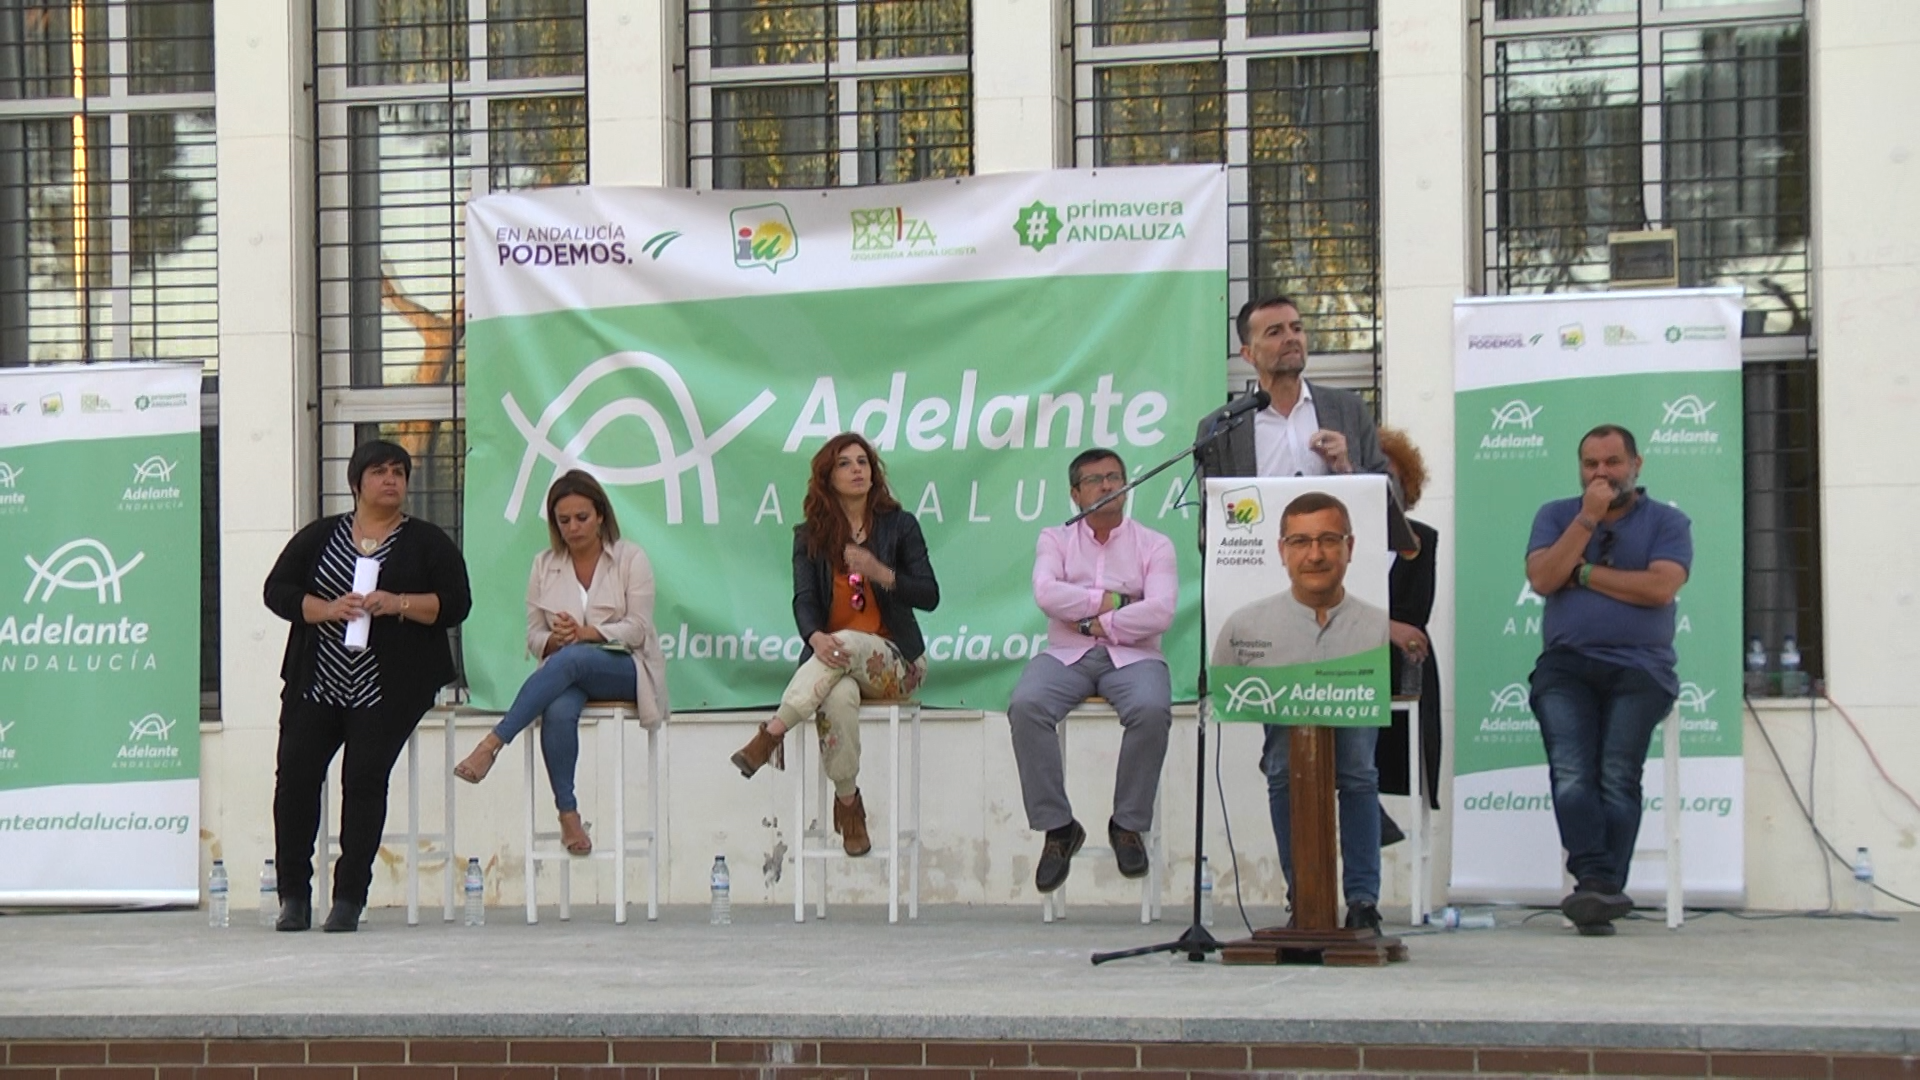 Antonio Maíllo respalda al candidato de Adelante Aljaraque